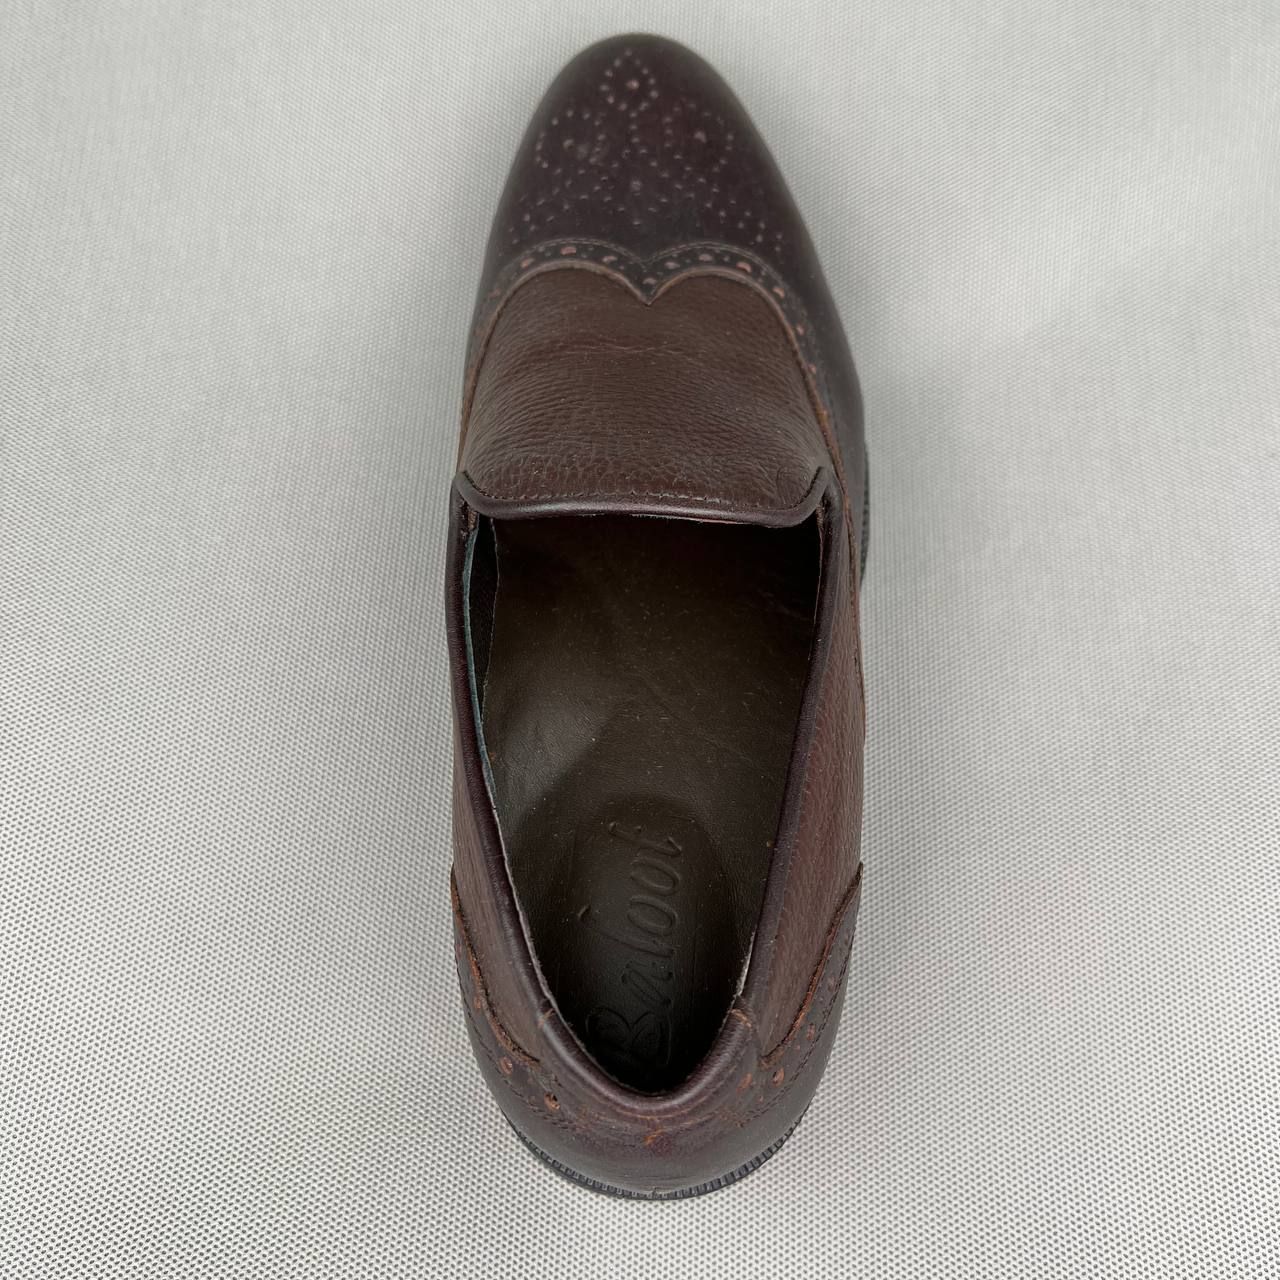 کفش مردانه بلوط مدل B7295 -  - 8